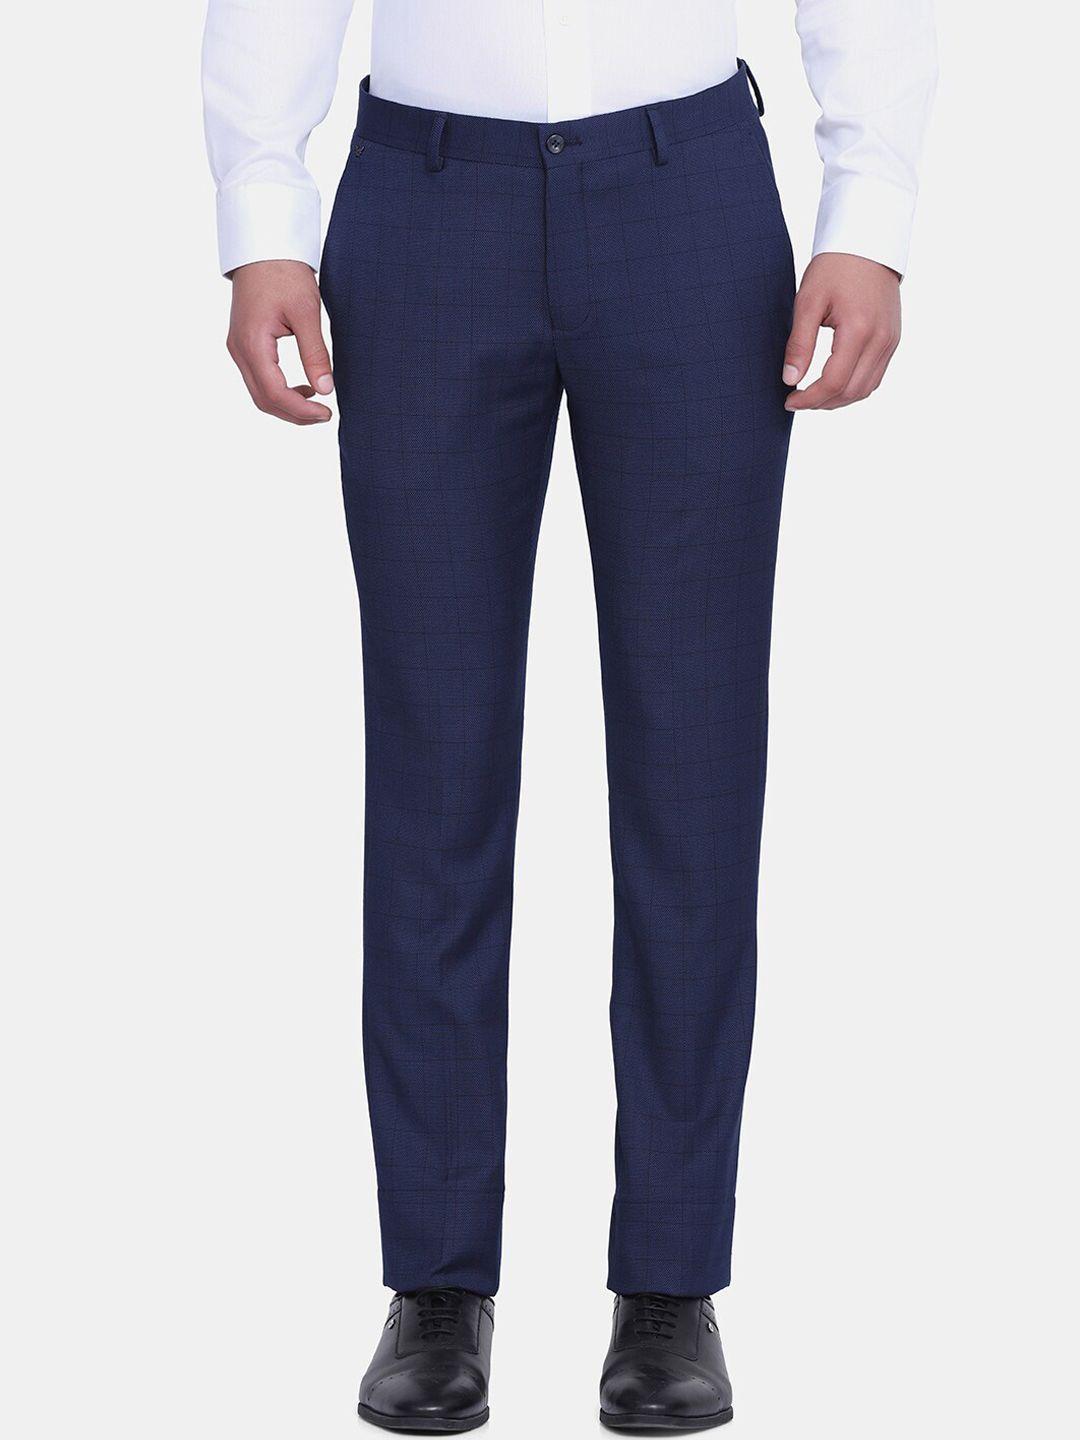 blackberrys-men-navy-blue-b-91-skinny-fit-trousers